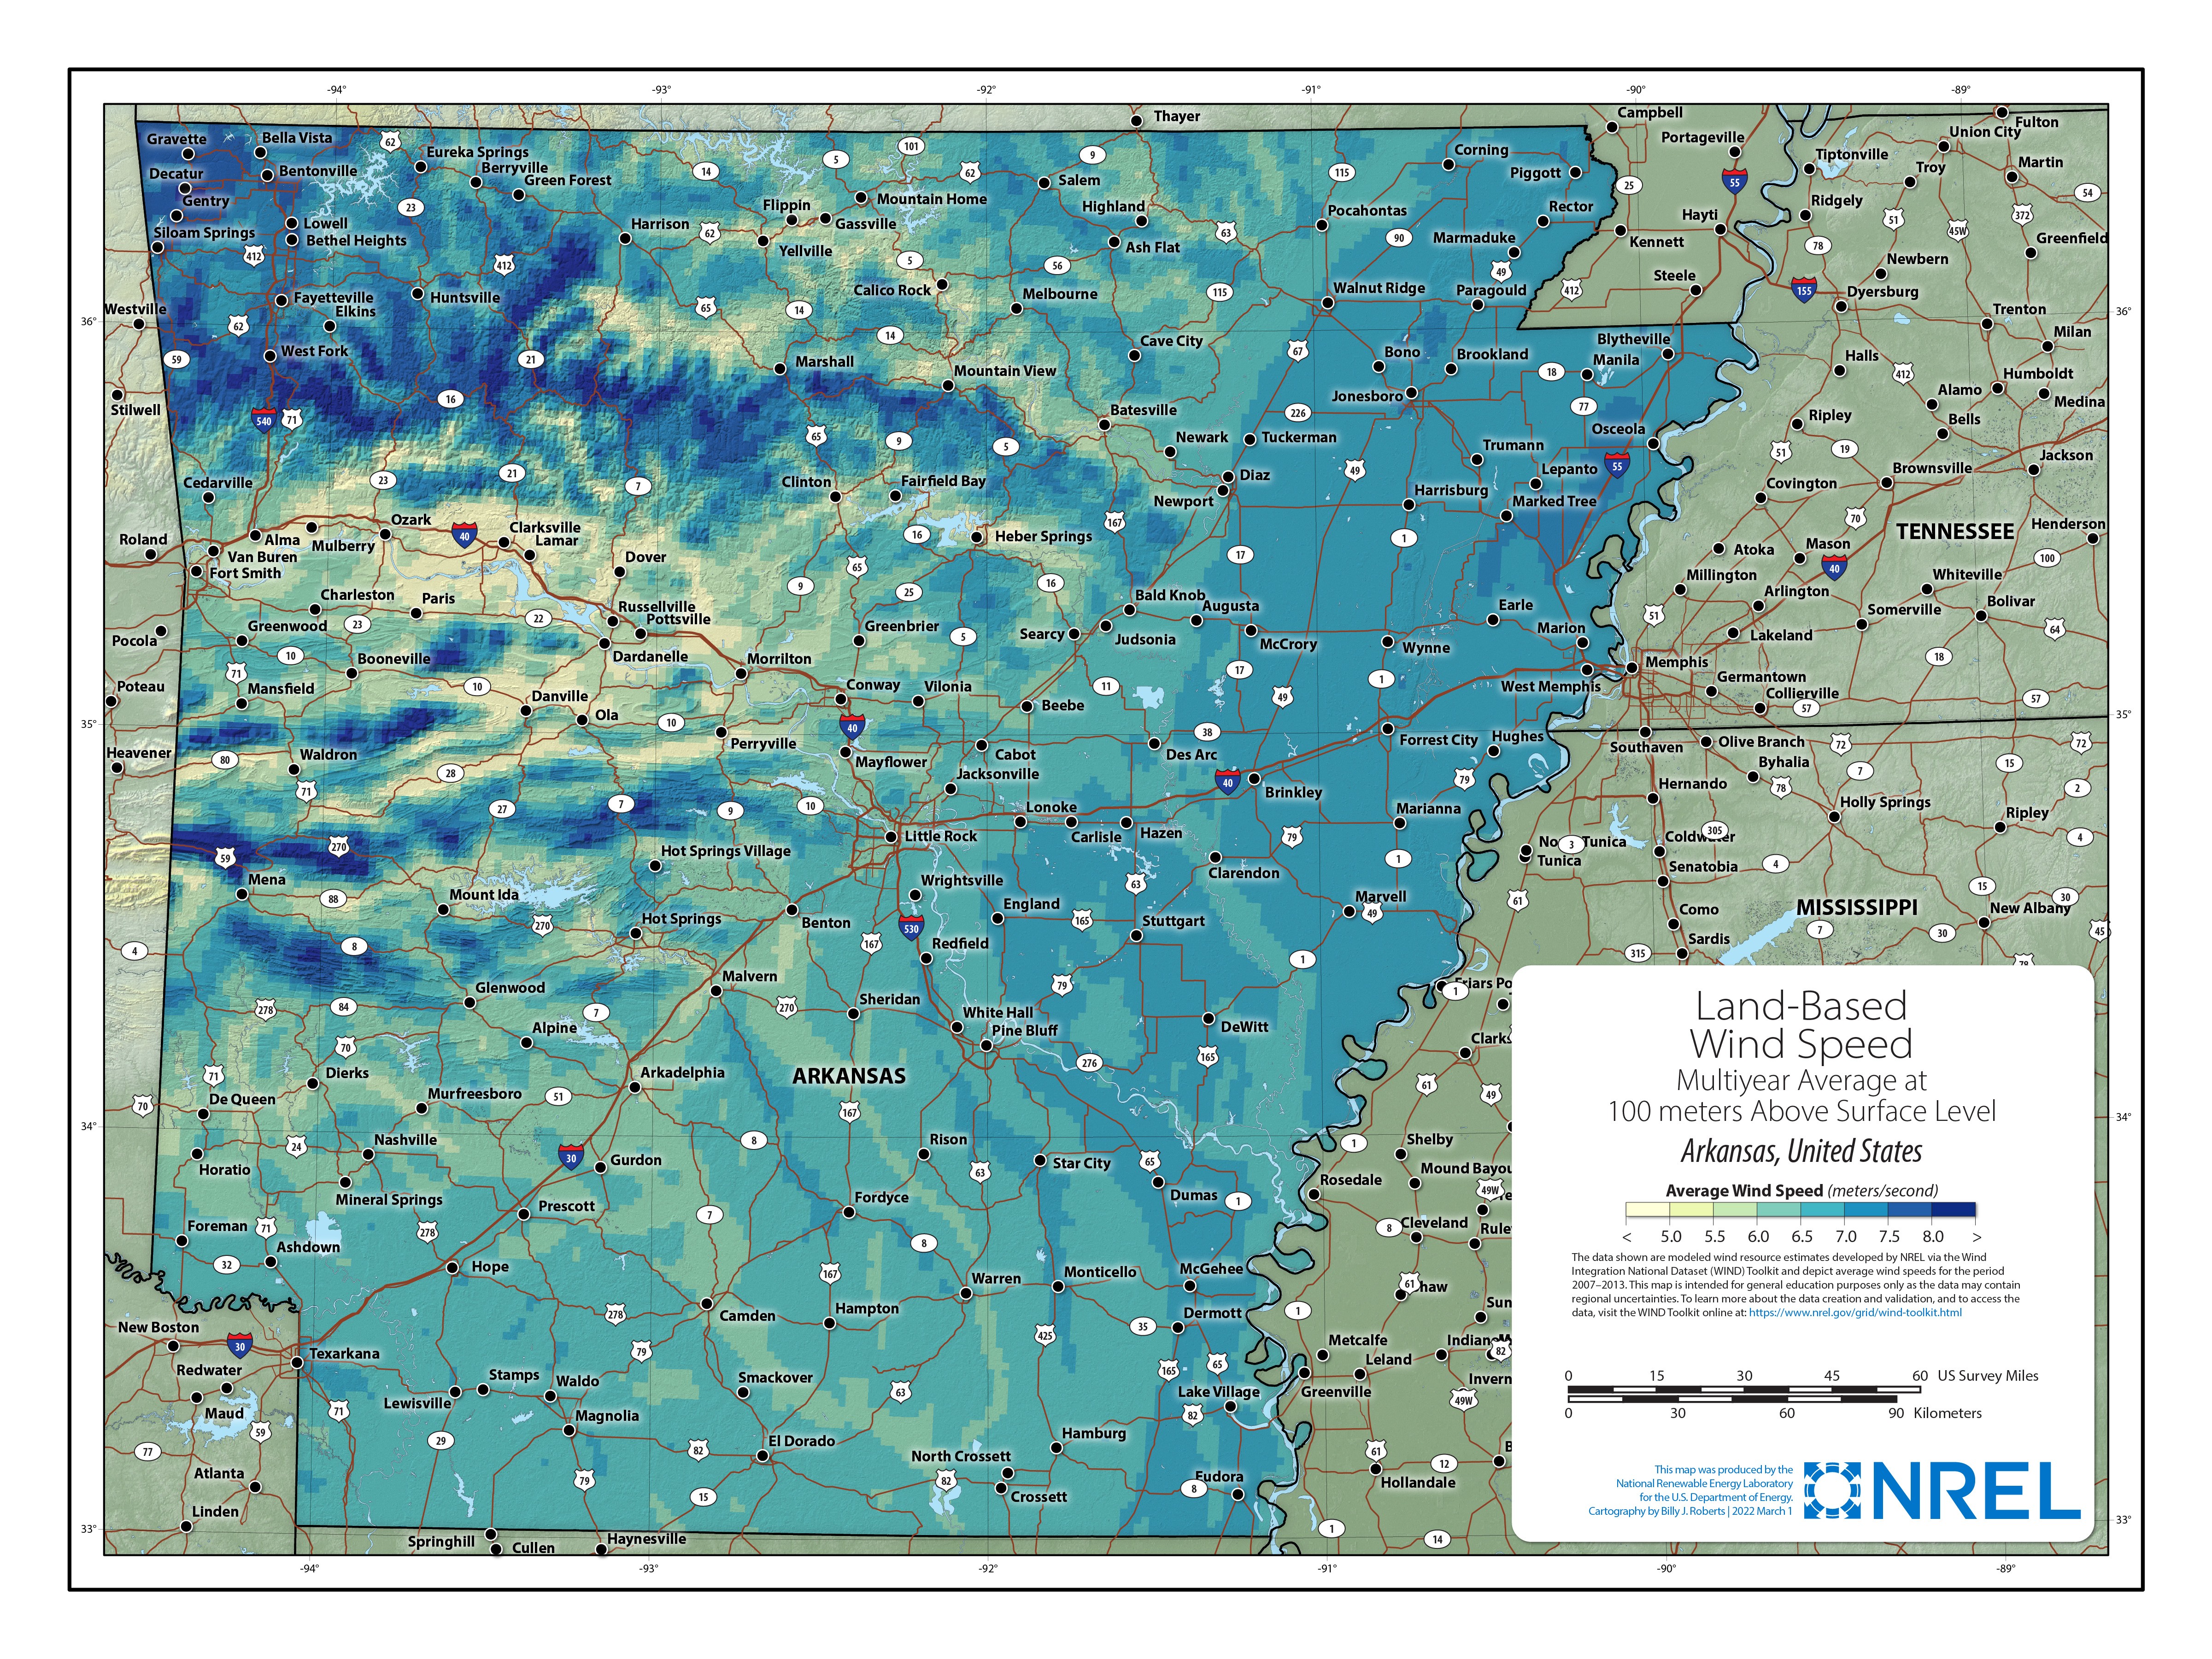 Arkansas Land-Based Wind Speed at 100 Meters